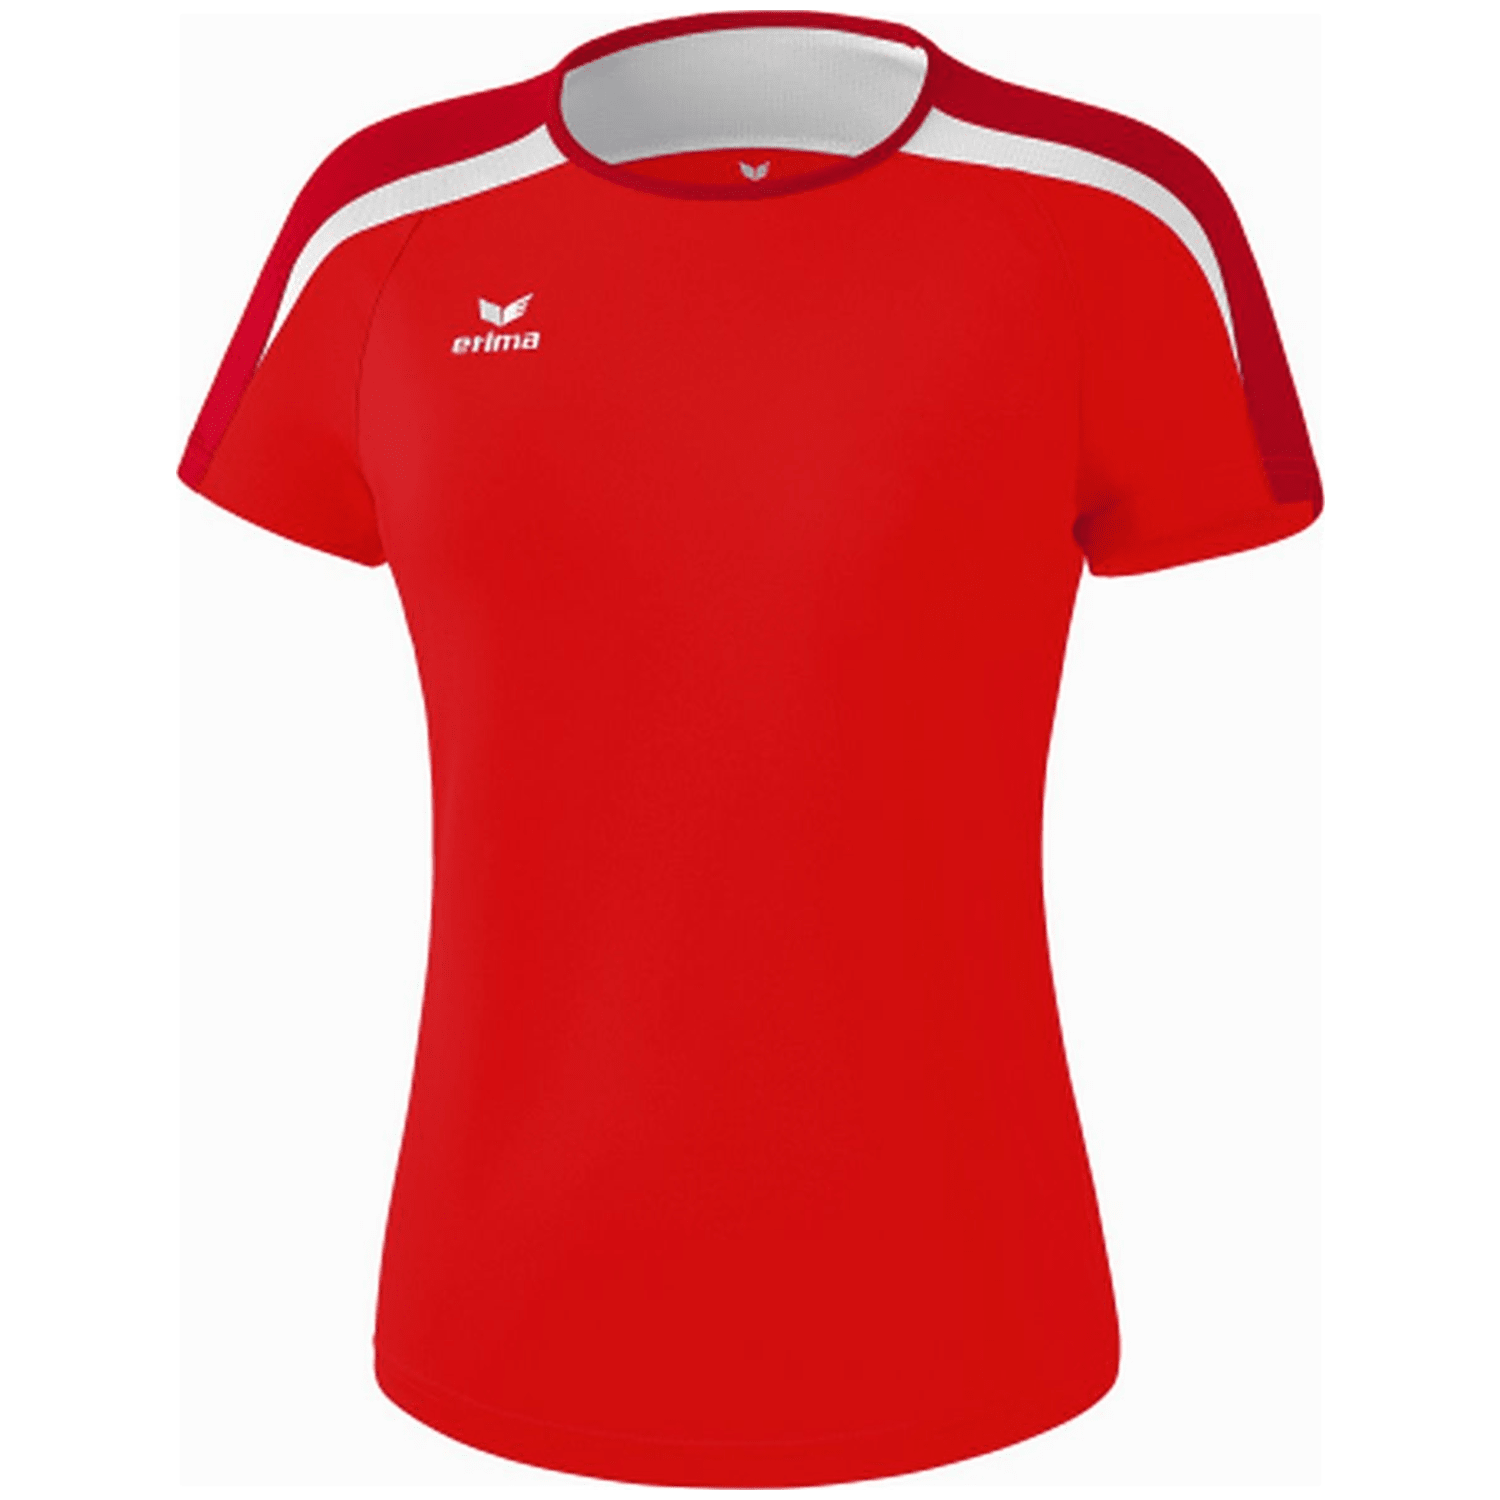 Erima Liga 2.0 Damen T-Shirt